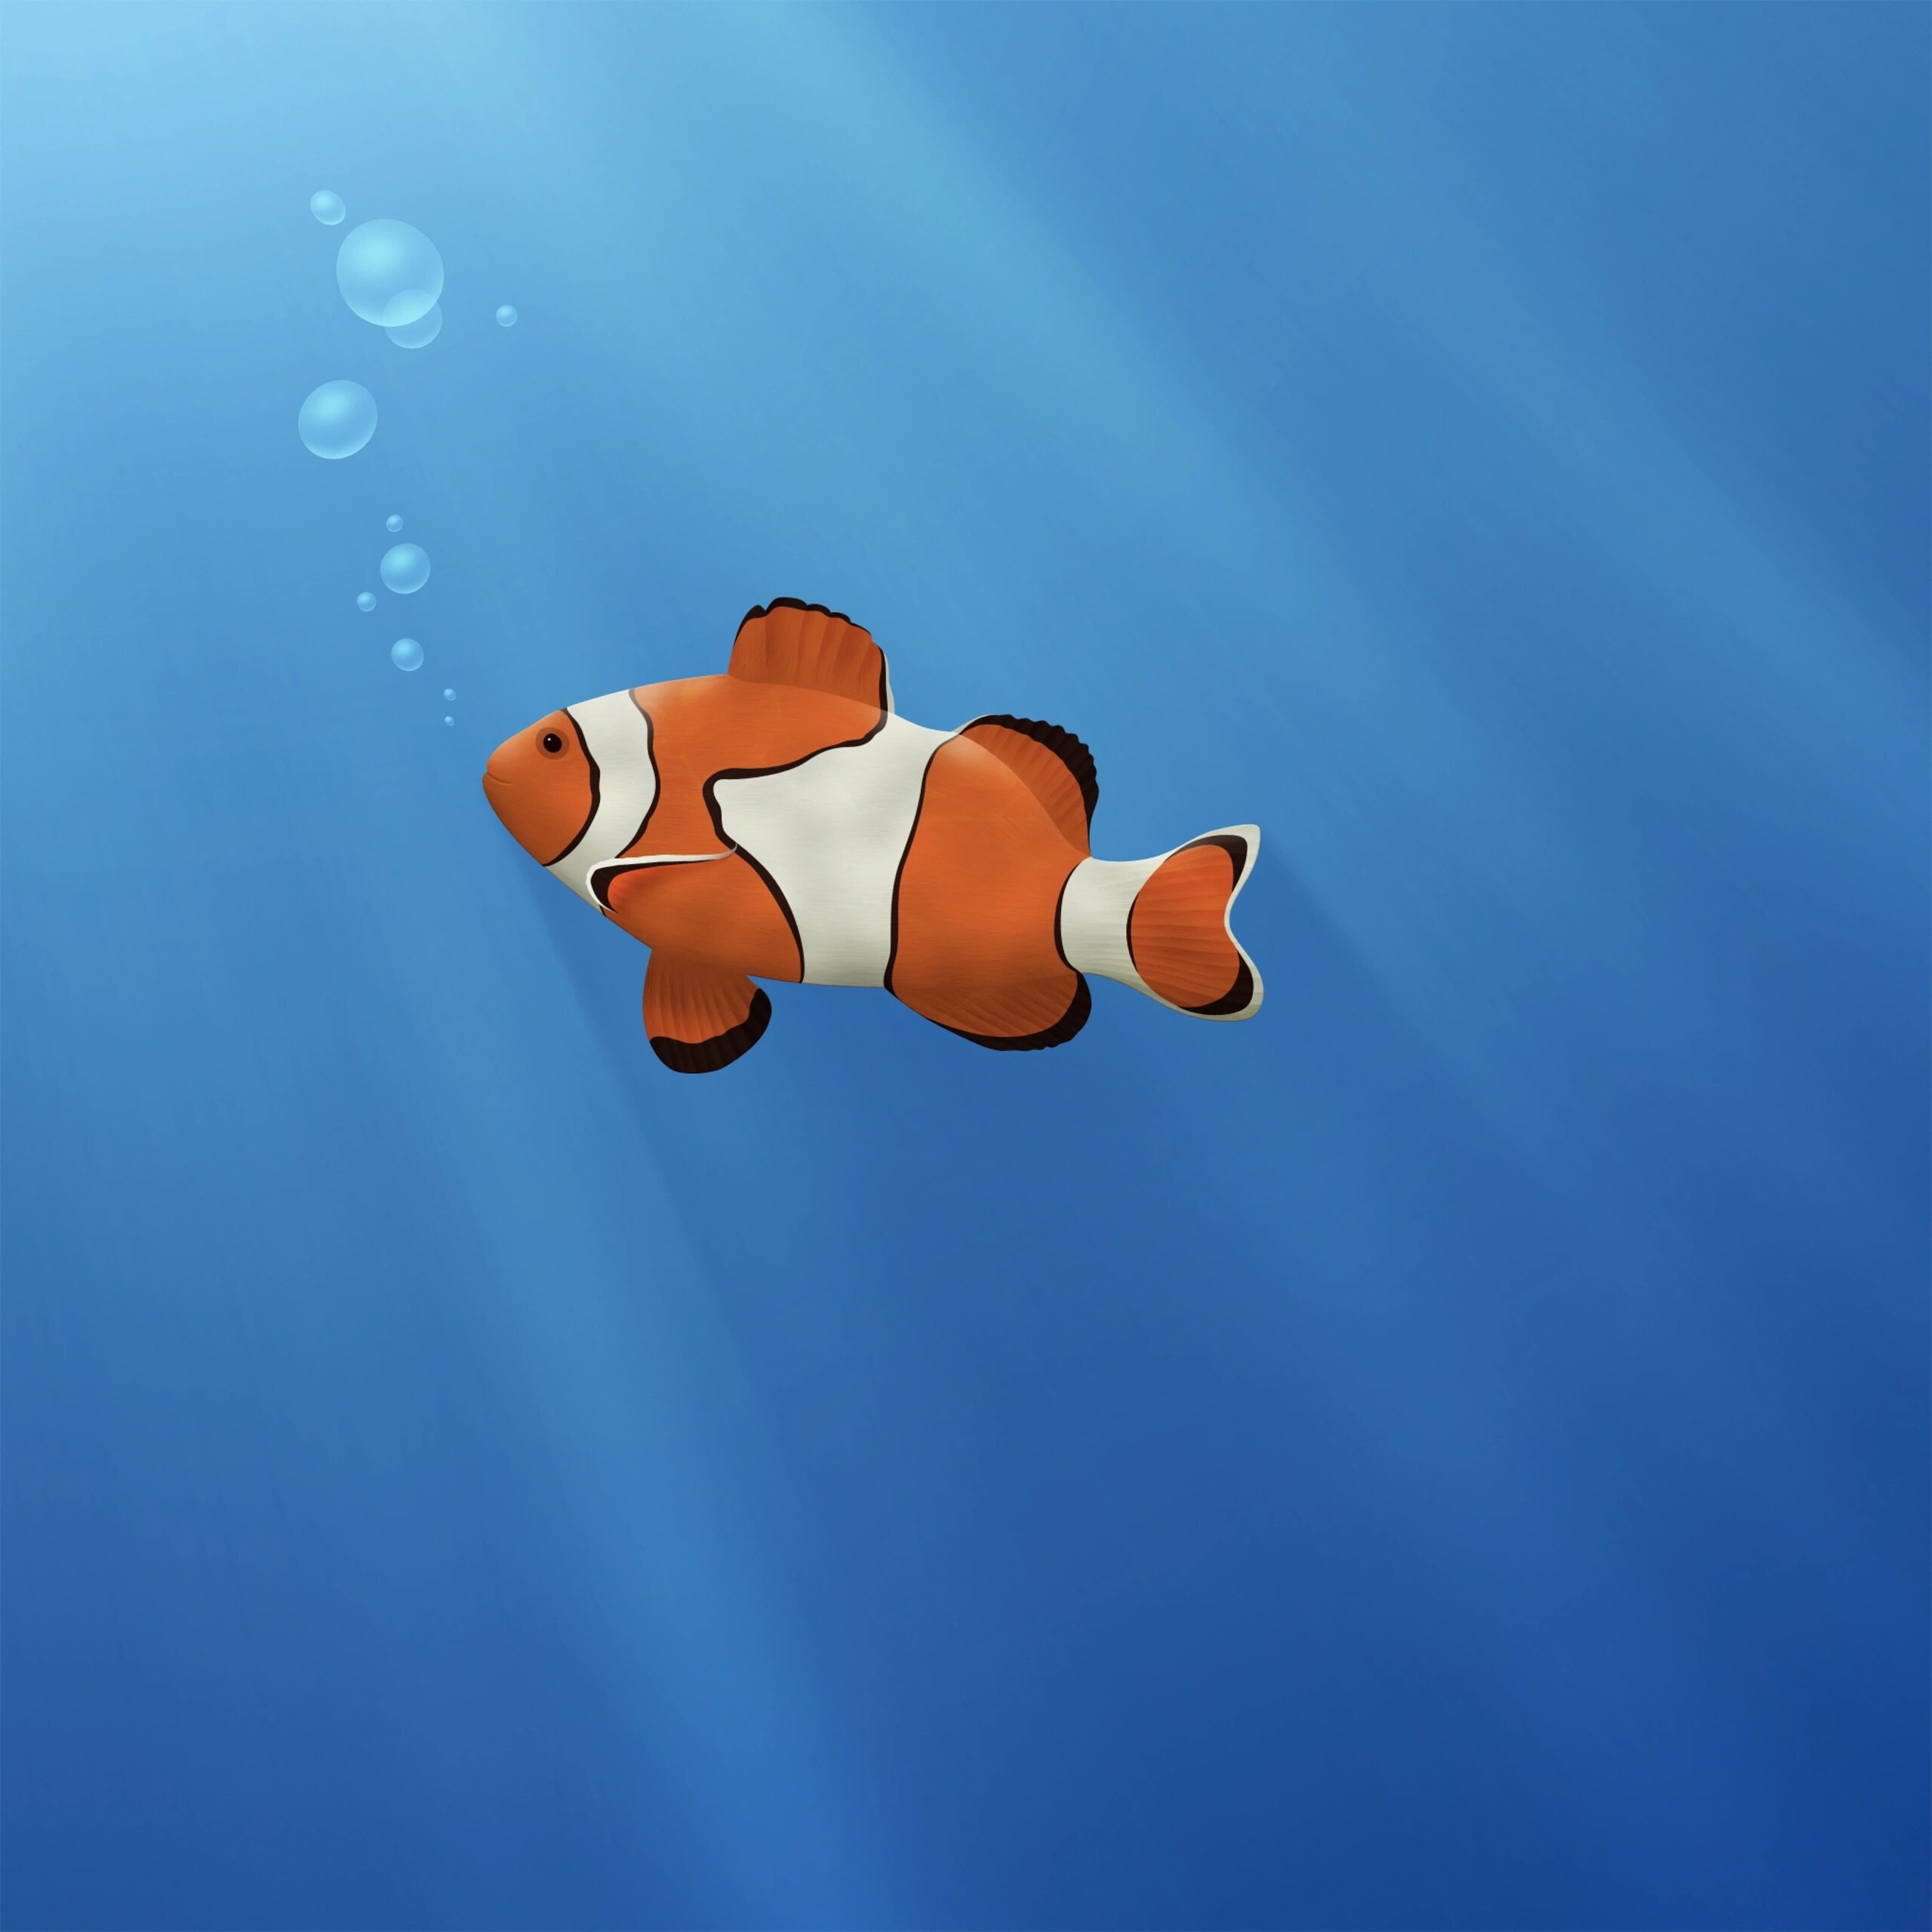 animated aquarium wallpaper for windows 7 free